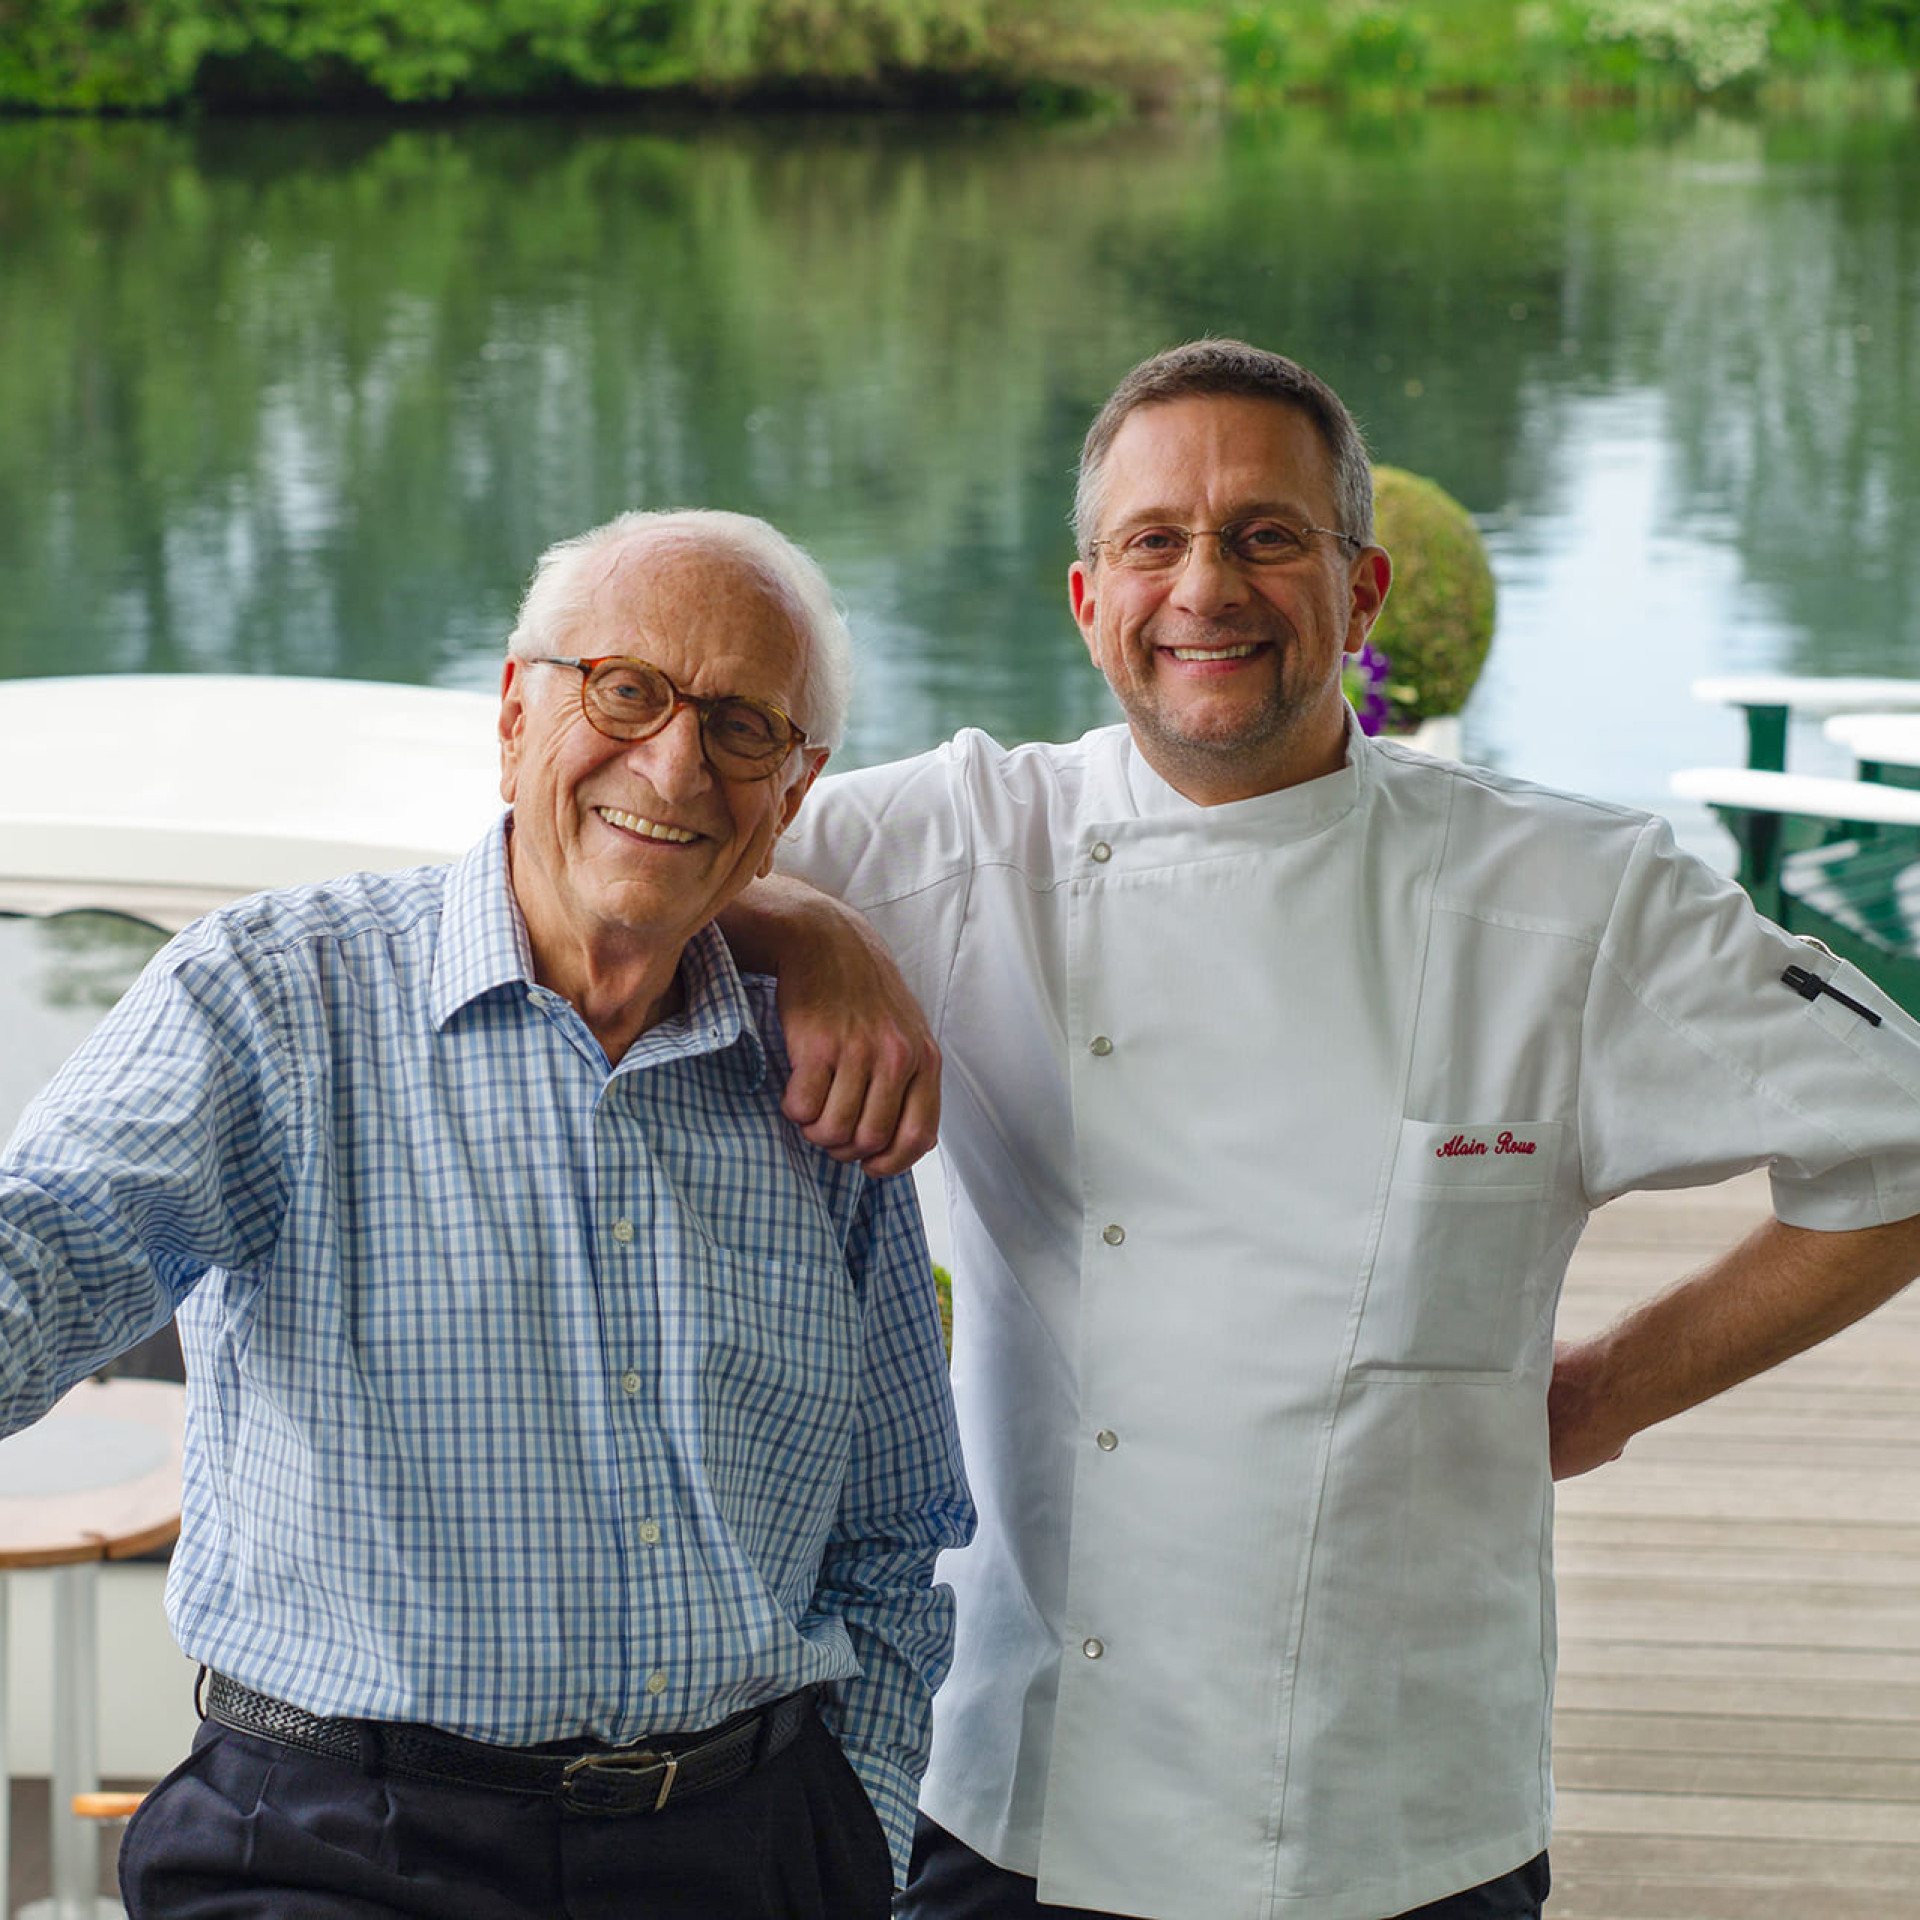 Michel Roux Sr, célèbre chef étoilé, renouvelle sa confiance en EuroCave - Photo : Michel Roux et son fils Alain Roux